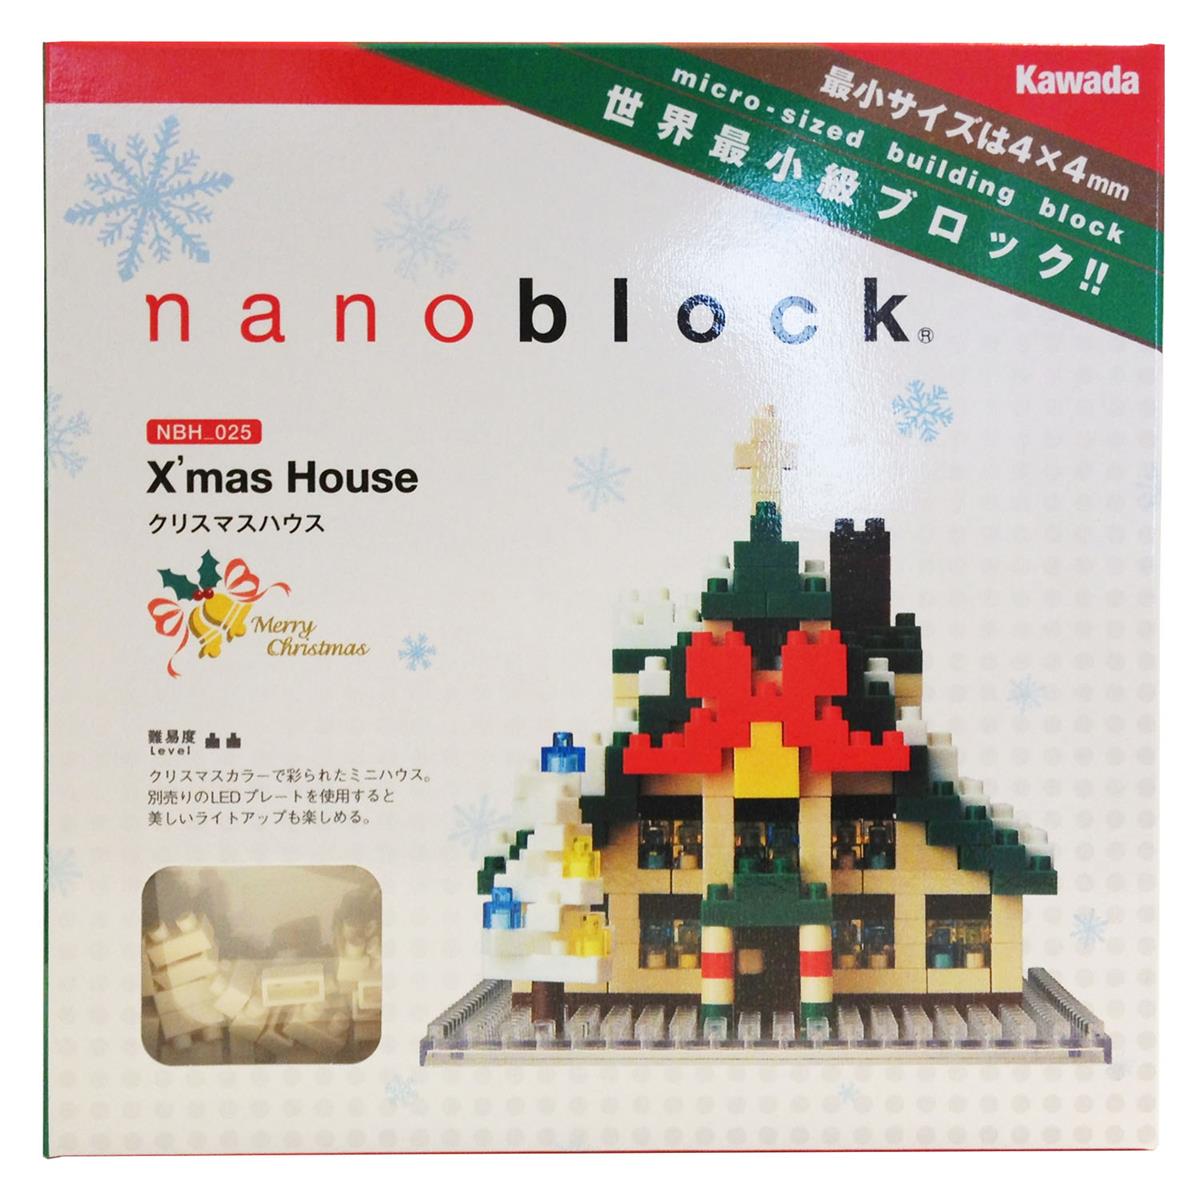 NBH-025 - Weihnachtshaus